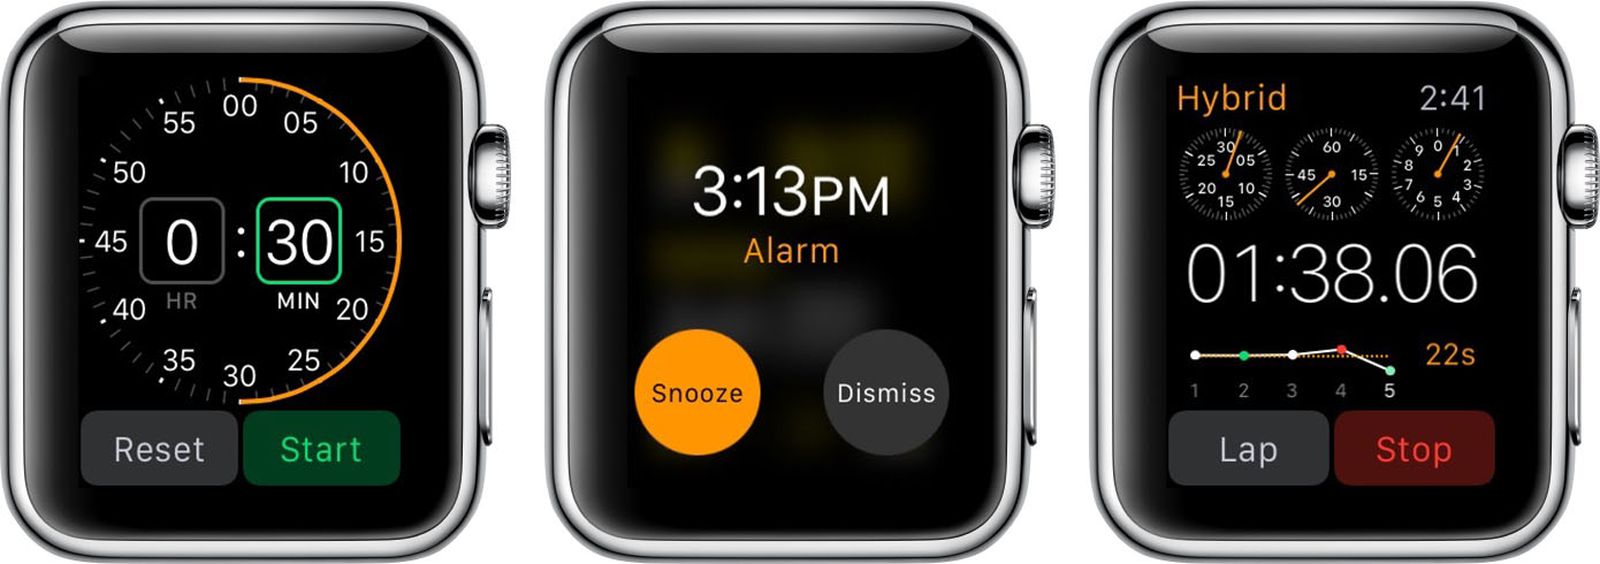 verontschuldiging volgens evenwicht Using the Timer, Alarm, and Stopwatch Apps on Apple Watch - MacRumors